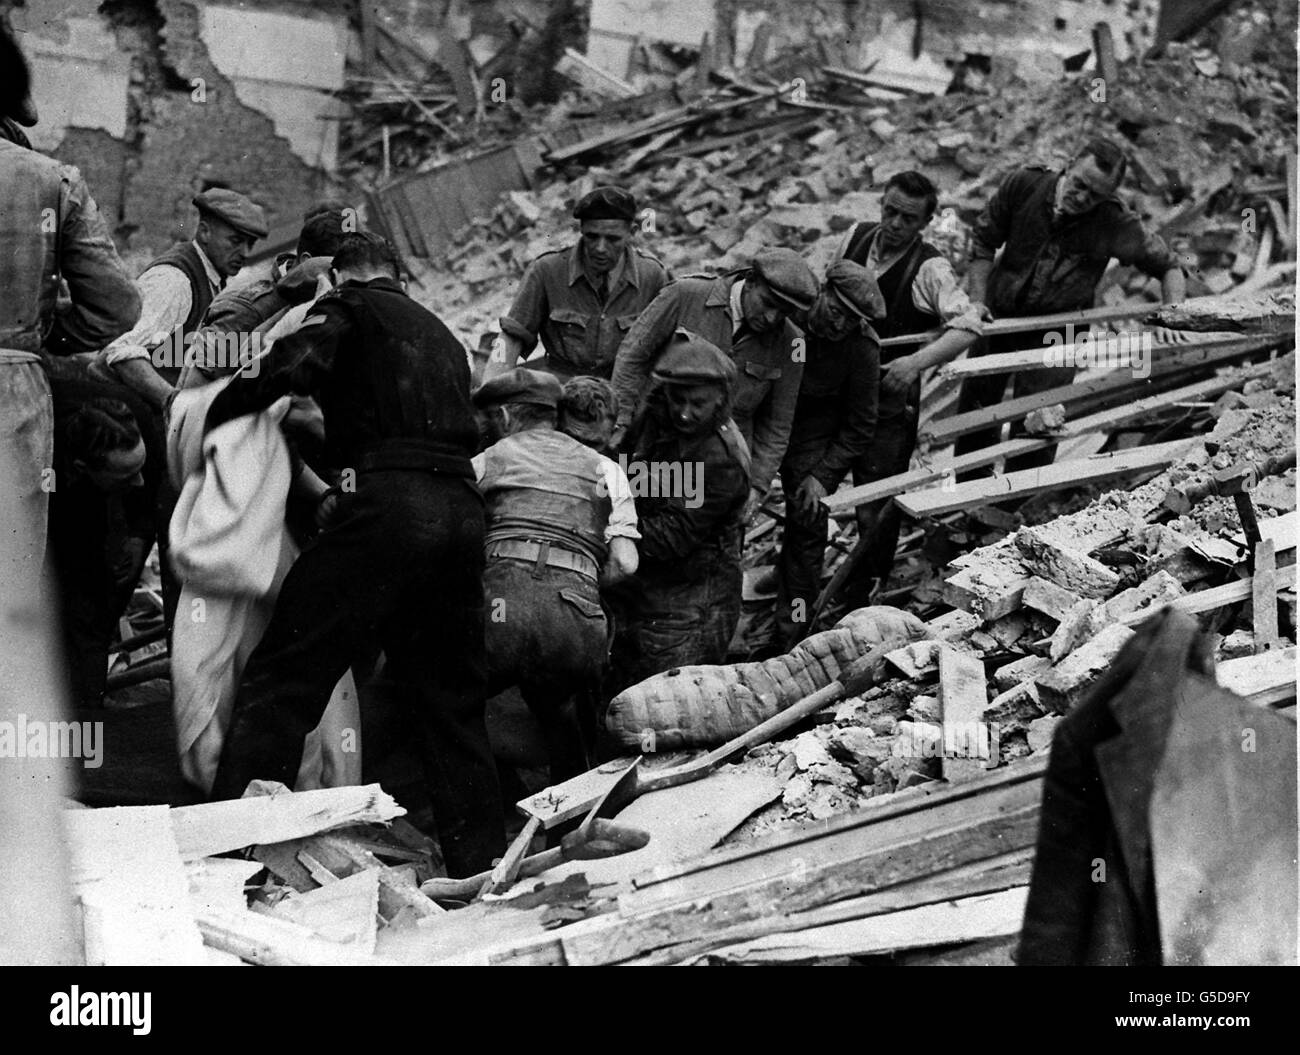 RAID aérien ALLEMAND 1943: Après des heures de travail dur un homme est libéré de sous une grande pile de débris suite à un raid de nuit par la Luftwaffe dans la région de Londres. Photo de la collection PA de la Seconde Guerre mondiale. Banque D'Images